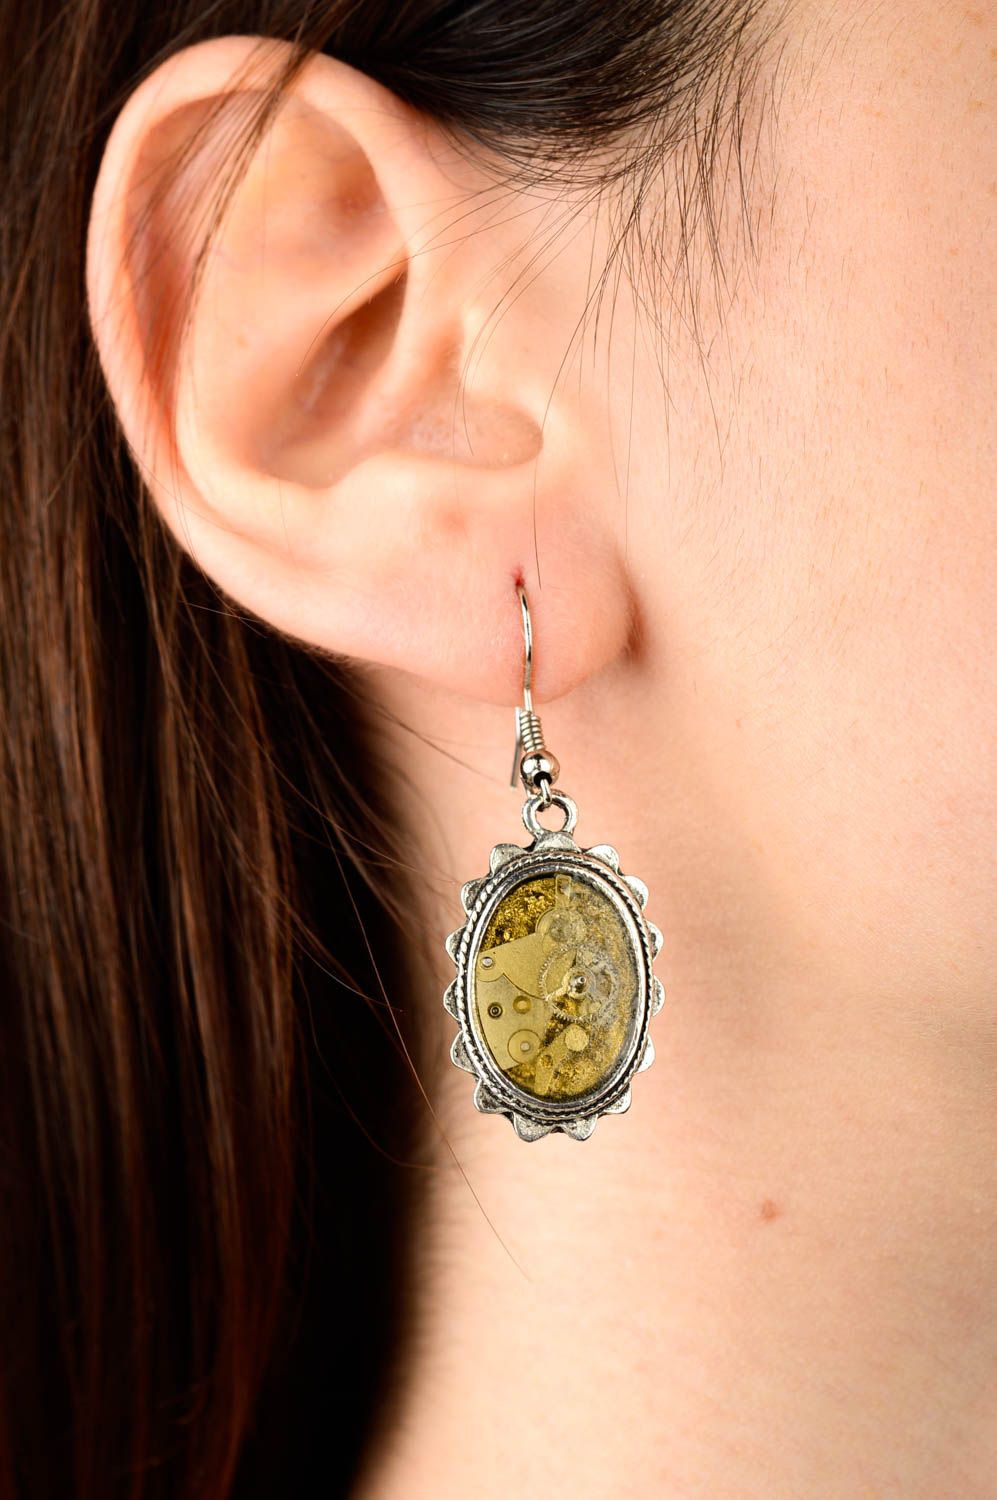 Handmade epoxy earrings designer earrings everyday earrings fashion jewelry photo 2